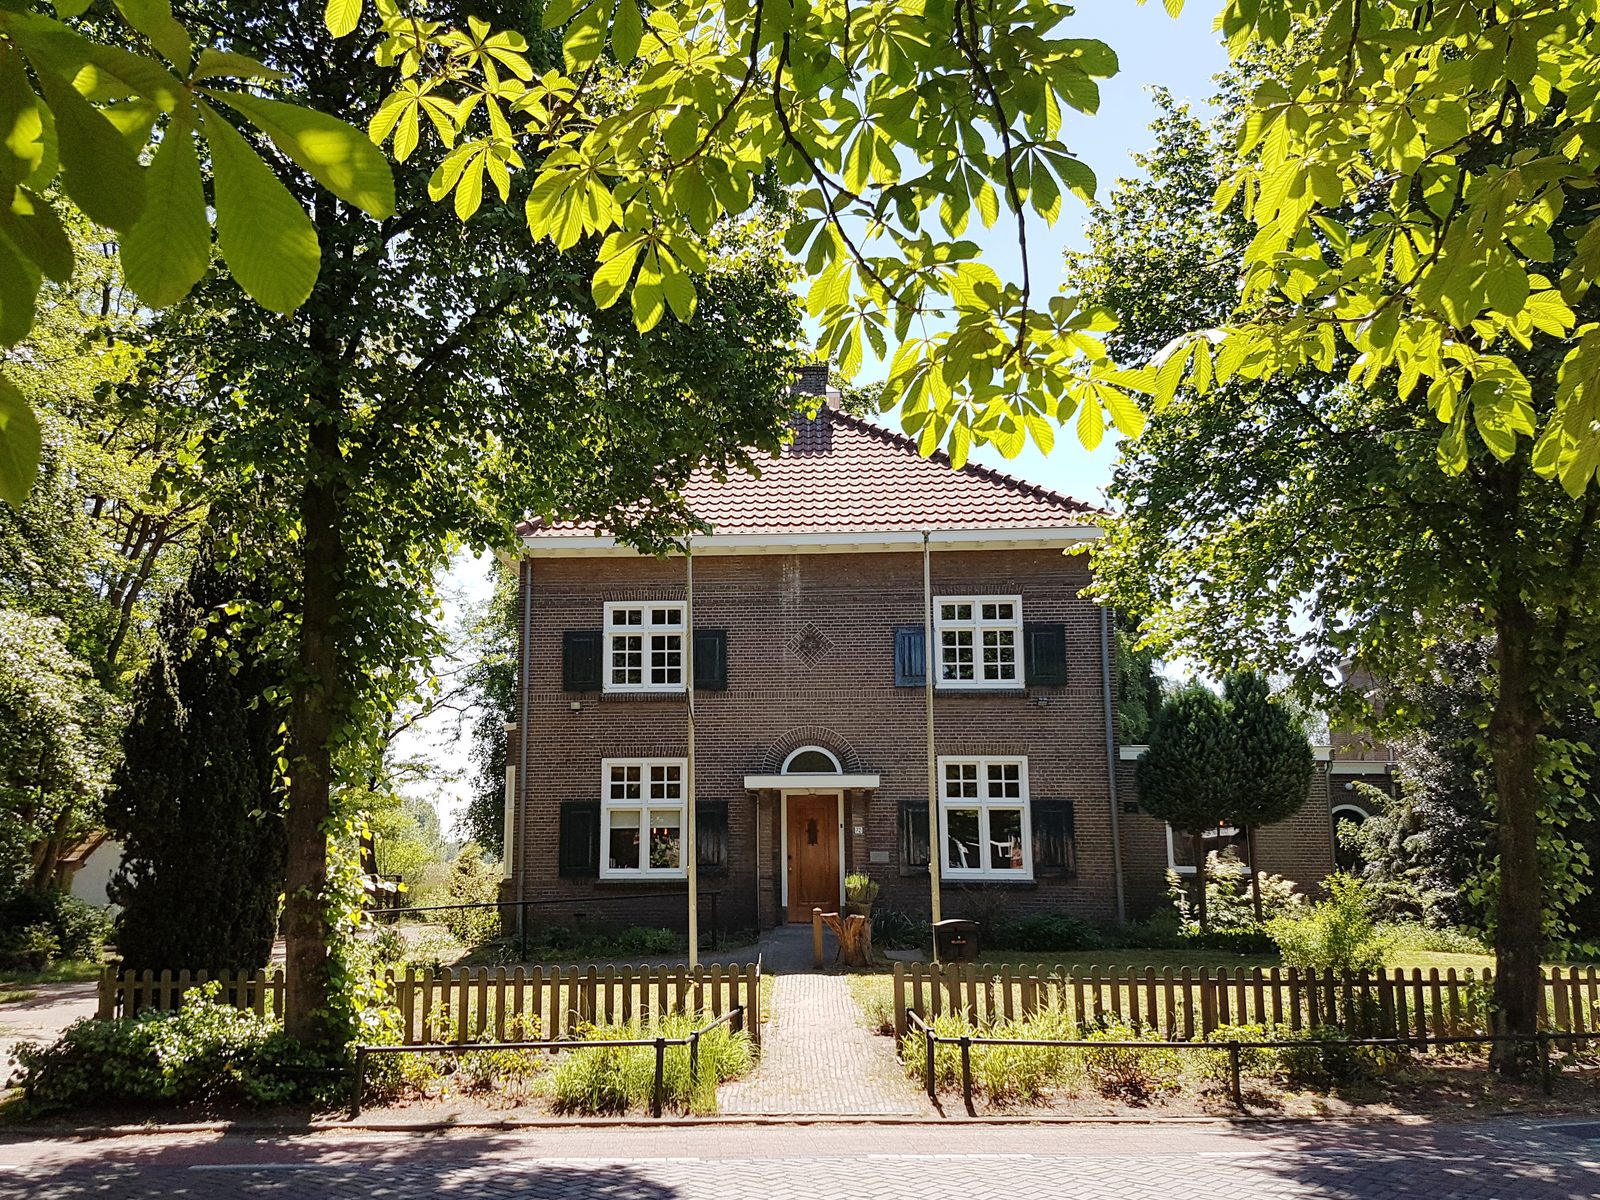 Vakantiehuis de Pastoorswoning in Brabant